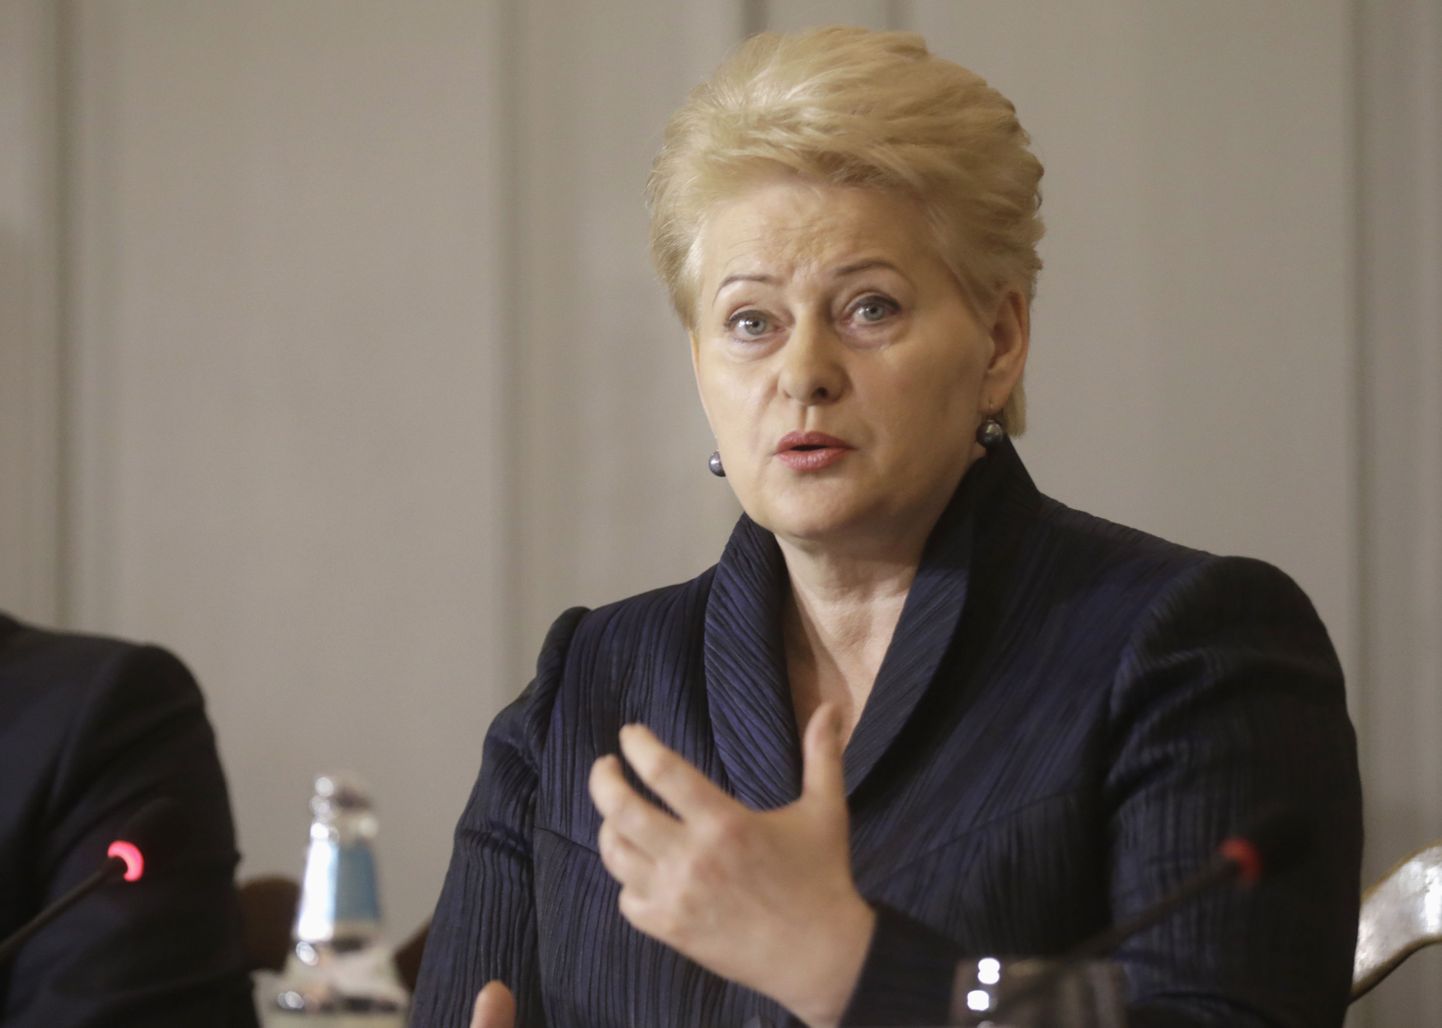 Leedu president Dalia Grybauskaite on infosõda saanud ka õige isiklikult tunda - möödunud nädalal jõudsid Brüsselisse teda KGBga seostavad raamatud.